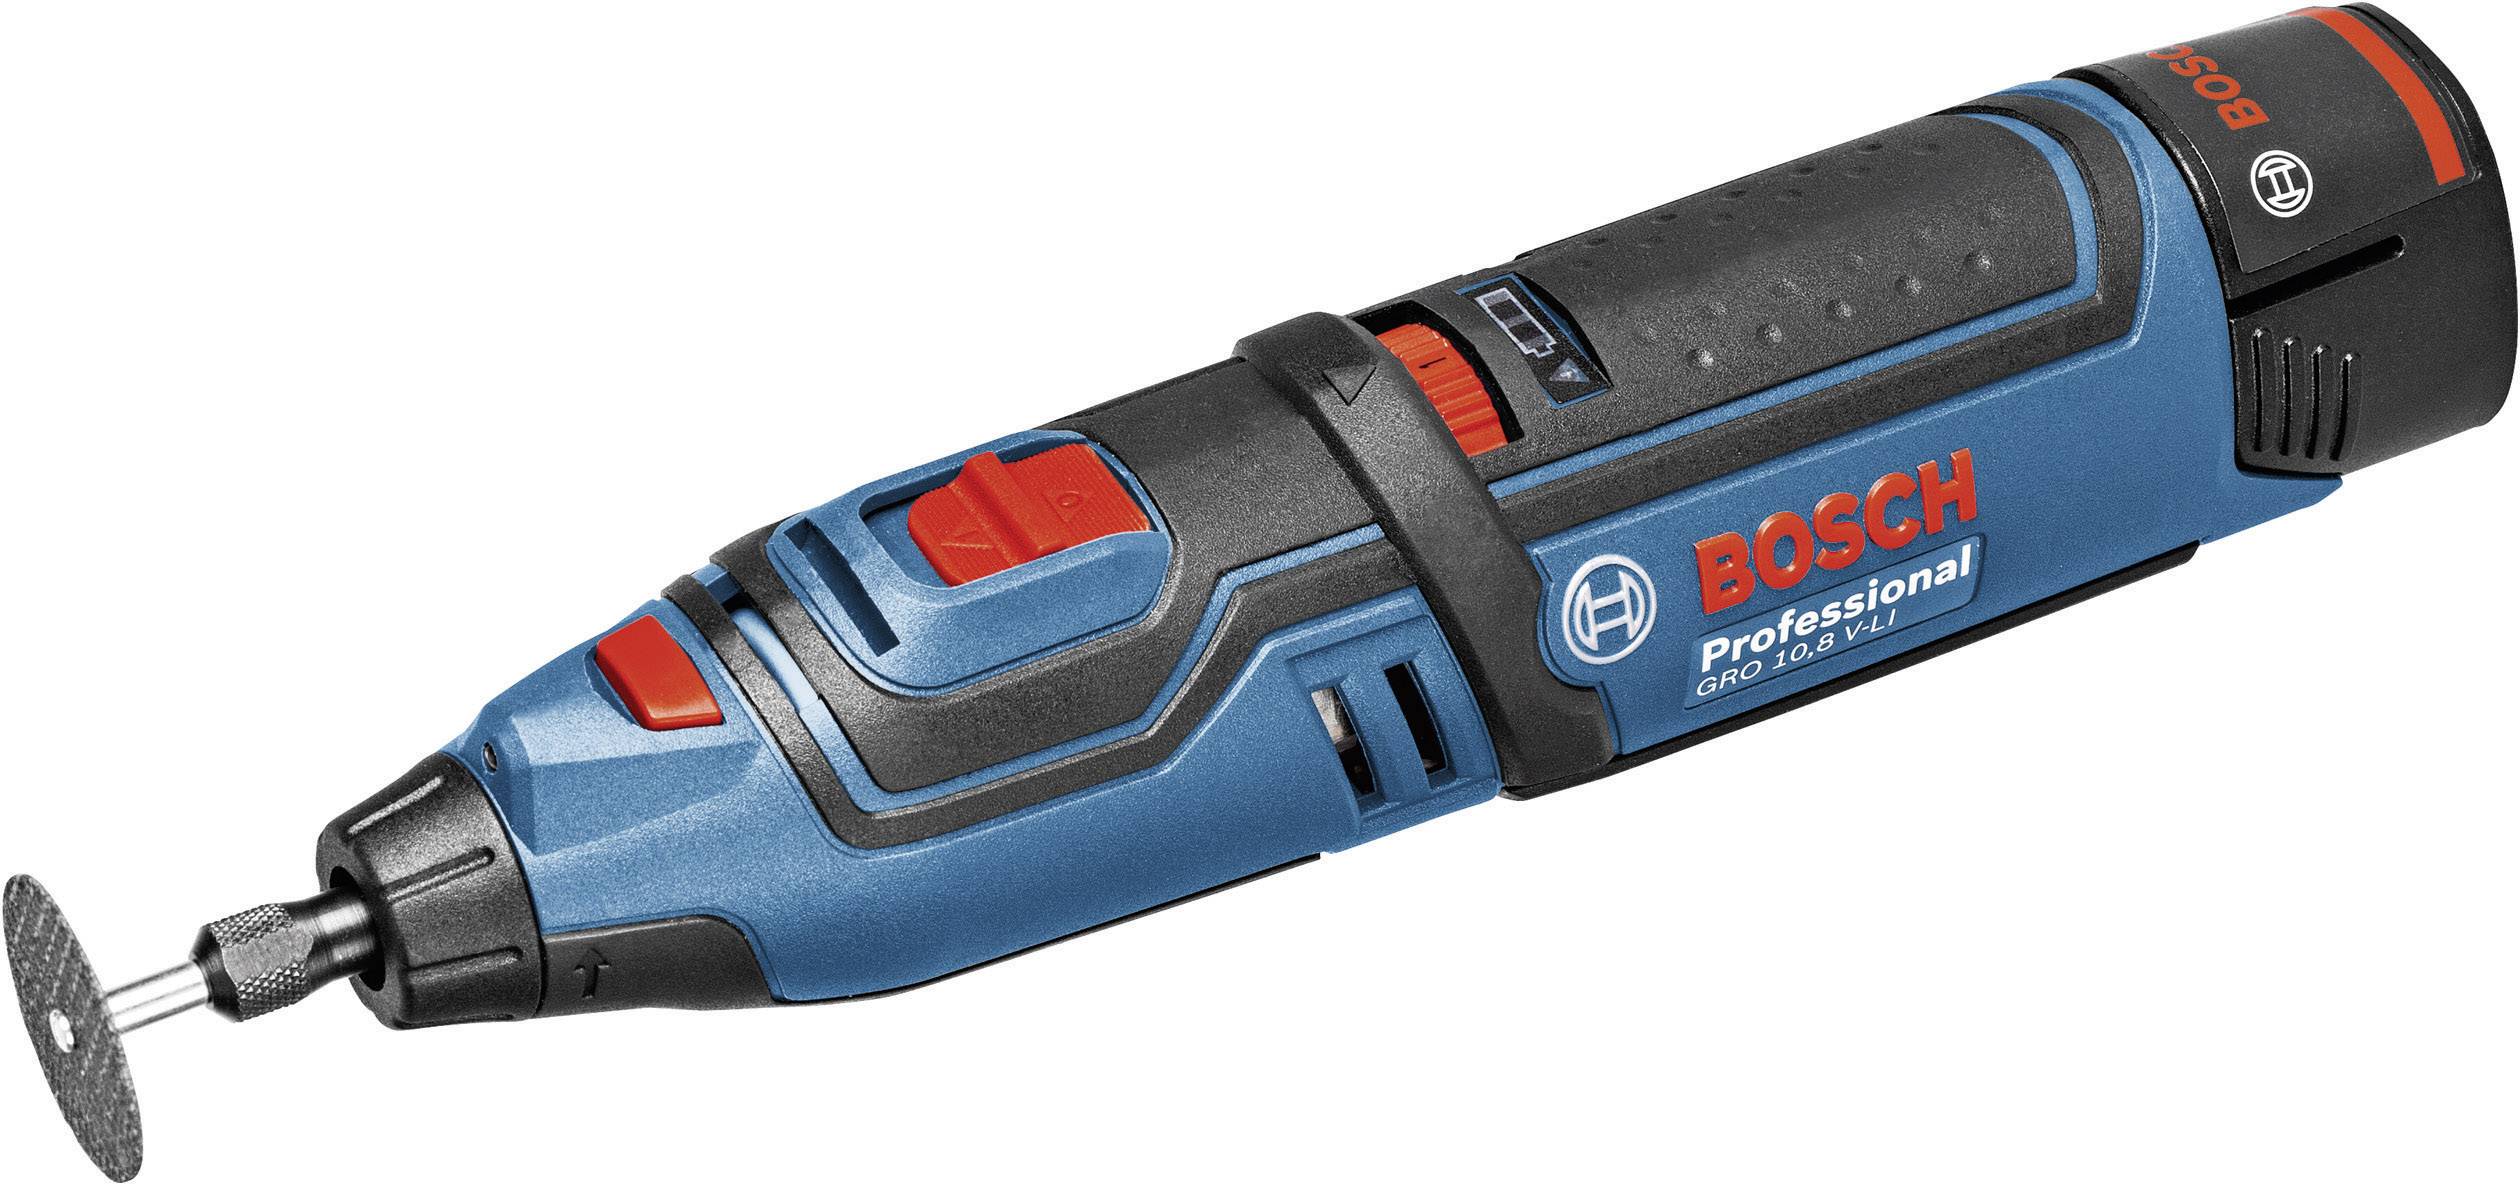 Bosch Professional GRO V 06019C5001 Batteridrevet multifunktionsværktøj inkl. ekstra batteri, Ku | Conradelektronik.dk